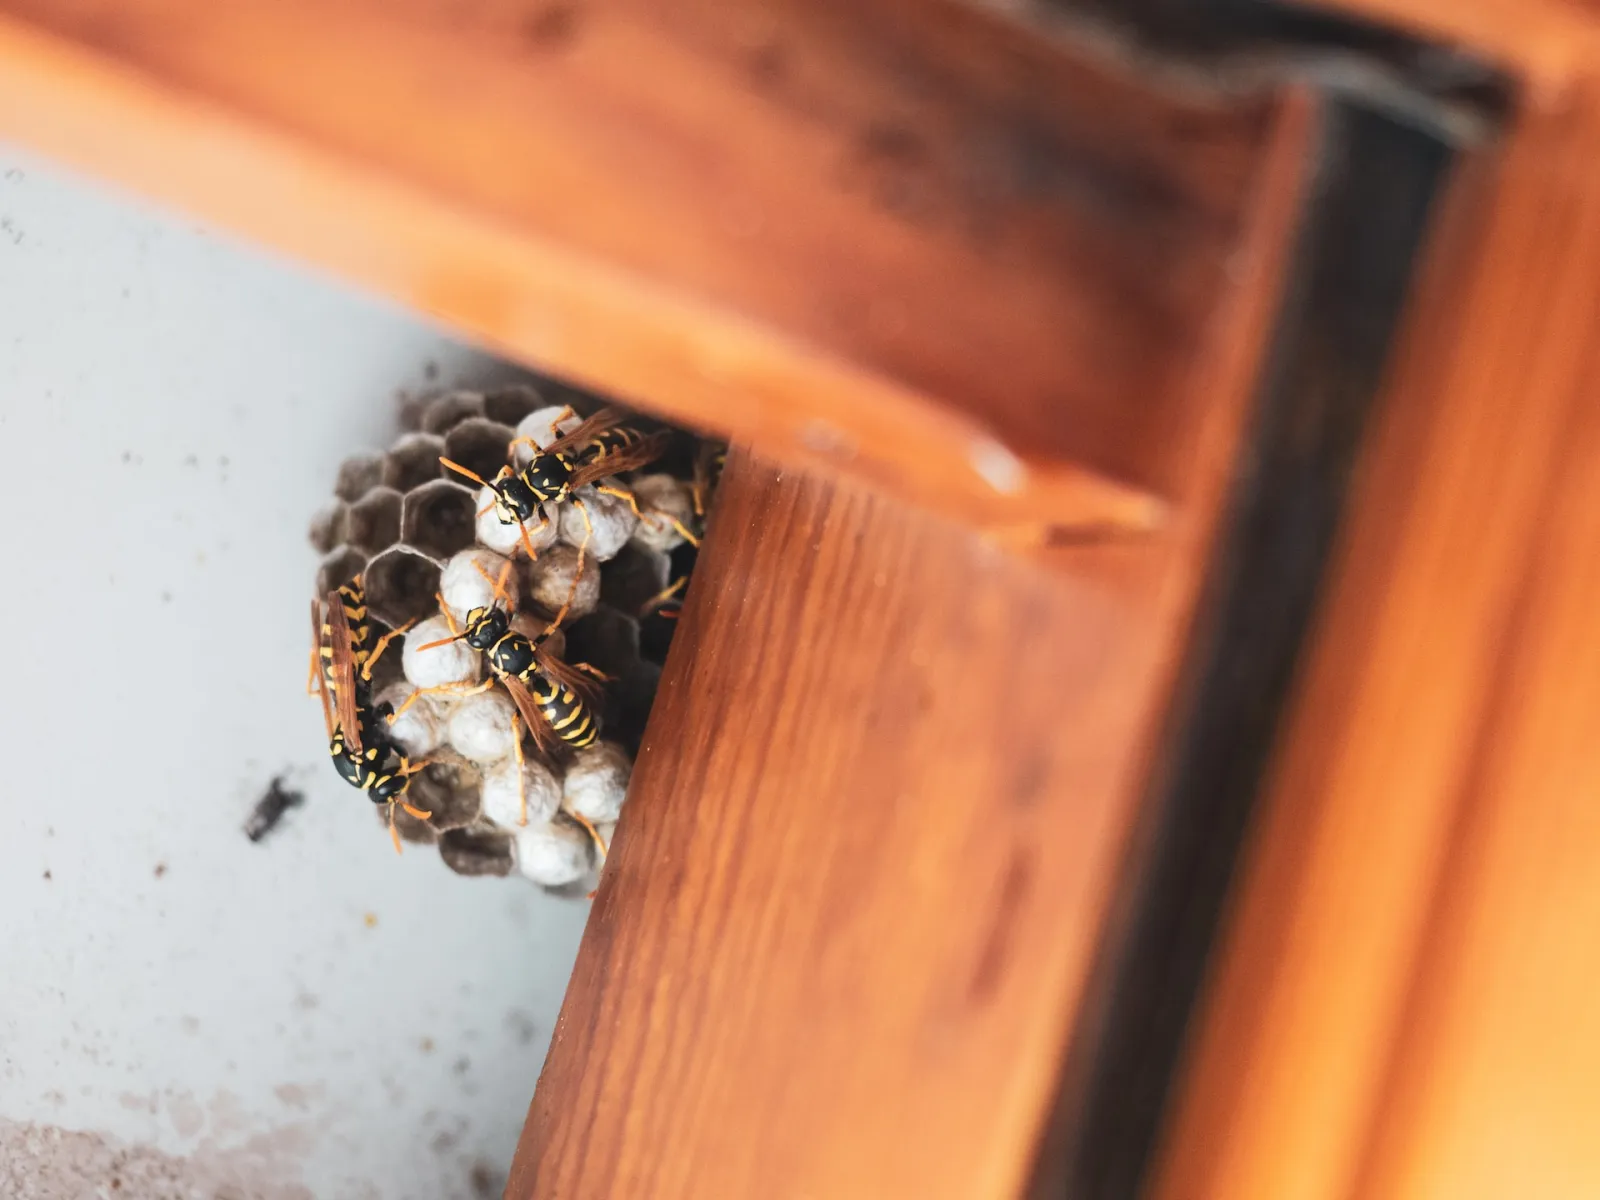 hornets building a nest under a wooden deck